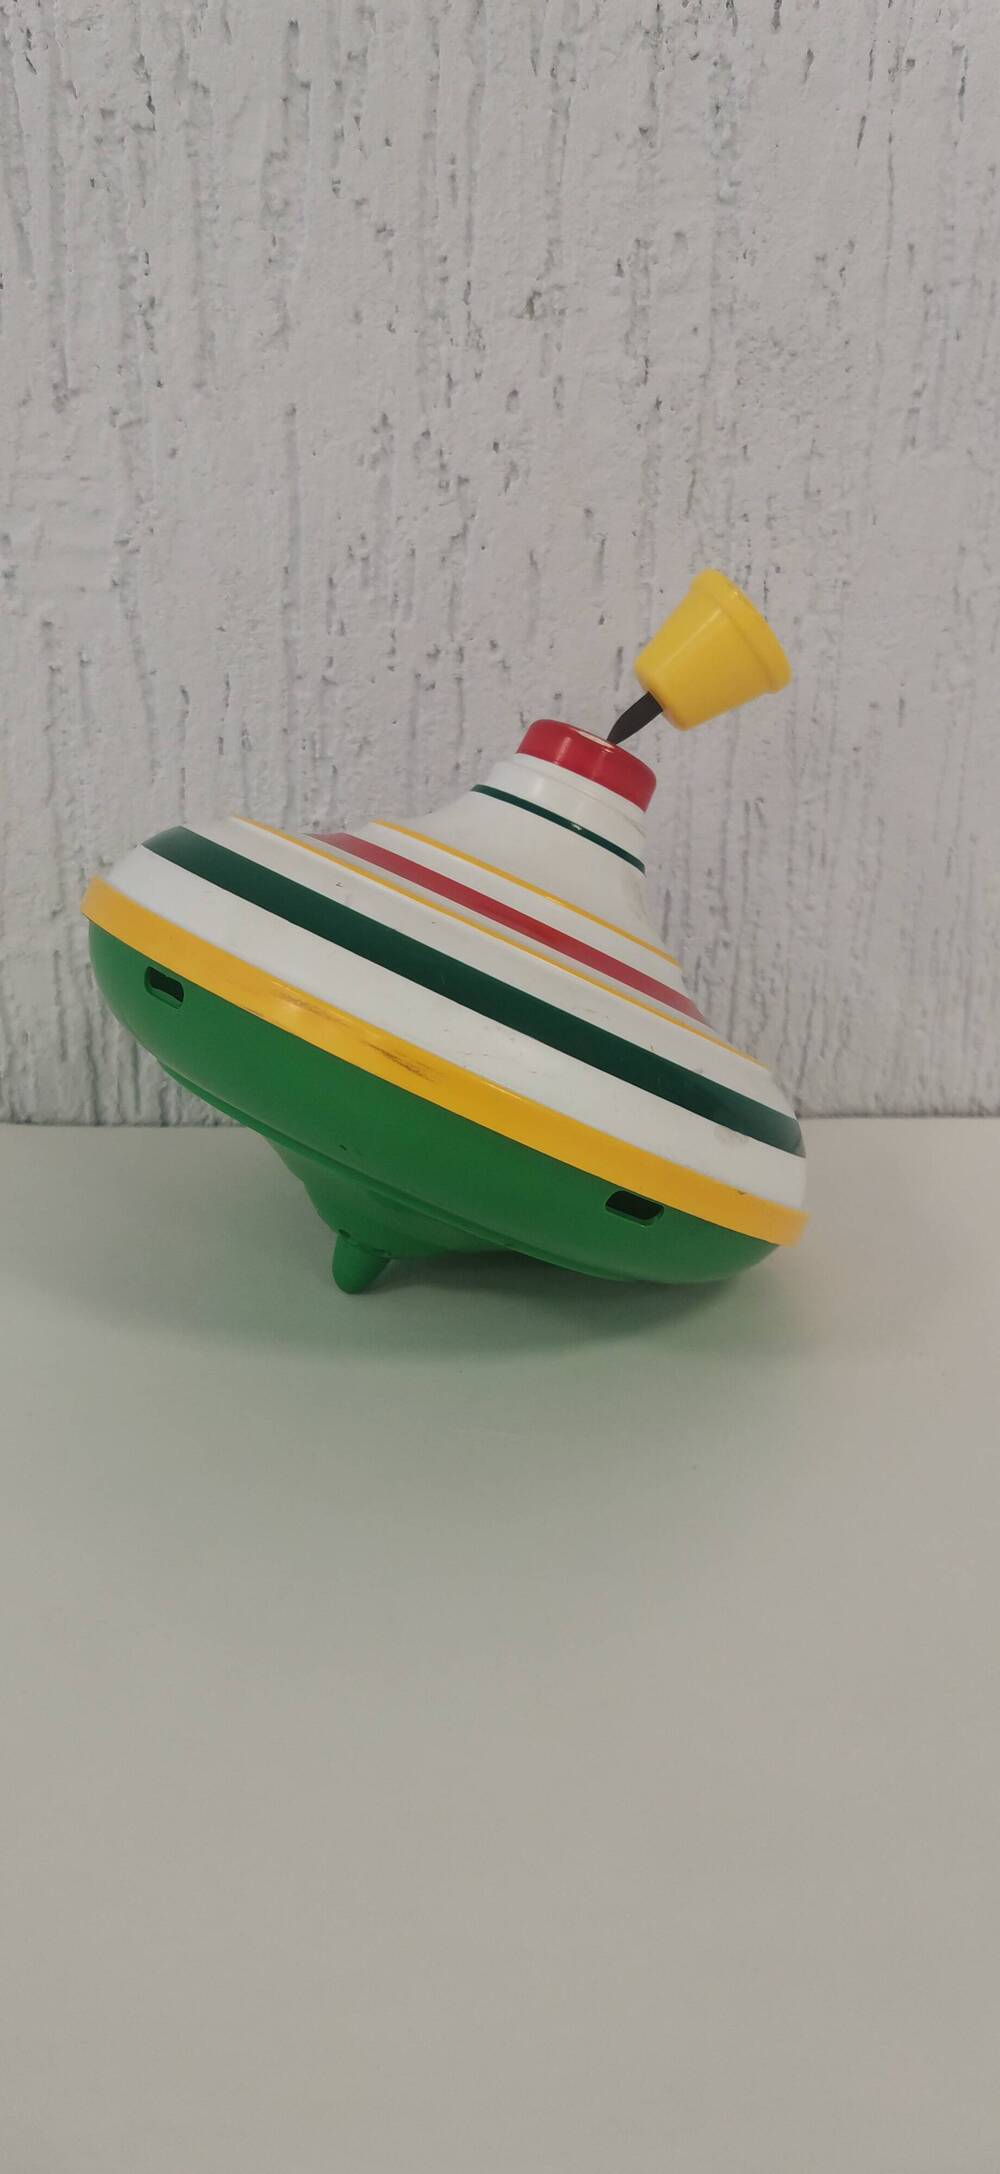 Игрушка Юла с запускателем. Материал пластмасса и металл. Цвет белый и зеленый с цветными полосами.